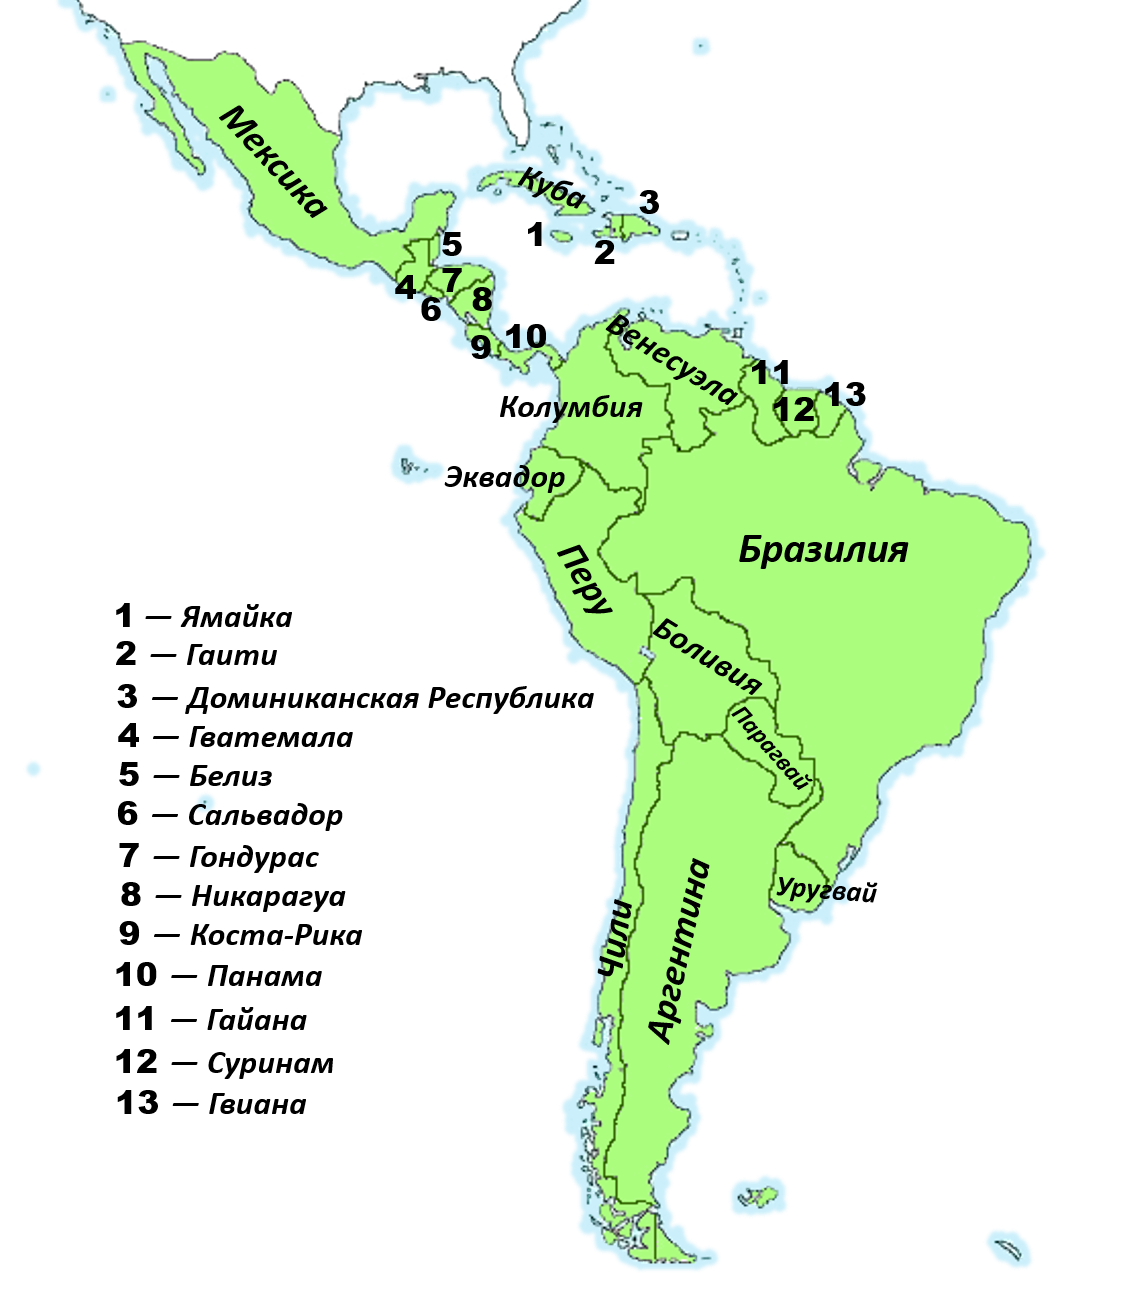 Откуда произошло название региона латинская америка. Политическая карта Латинской Америки со странами. Латинская Америка карта со странами и столицами на русском. Контурная карта государств Латинской Америки. Карта Латинской Америки со странами.